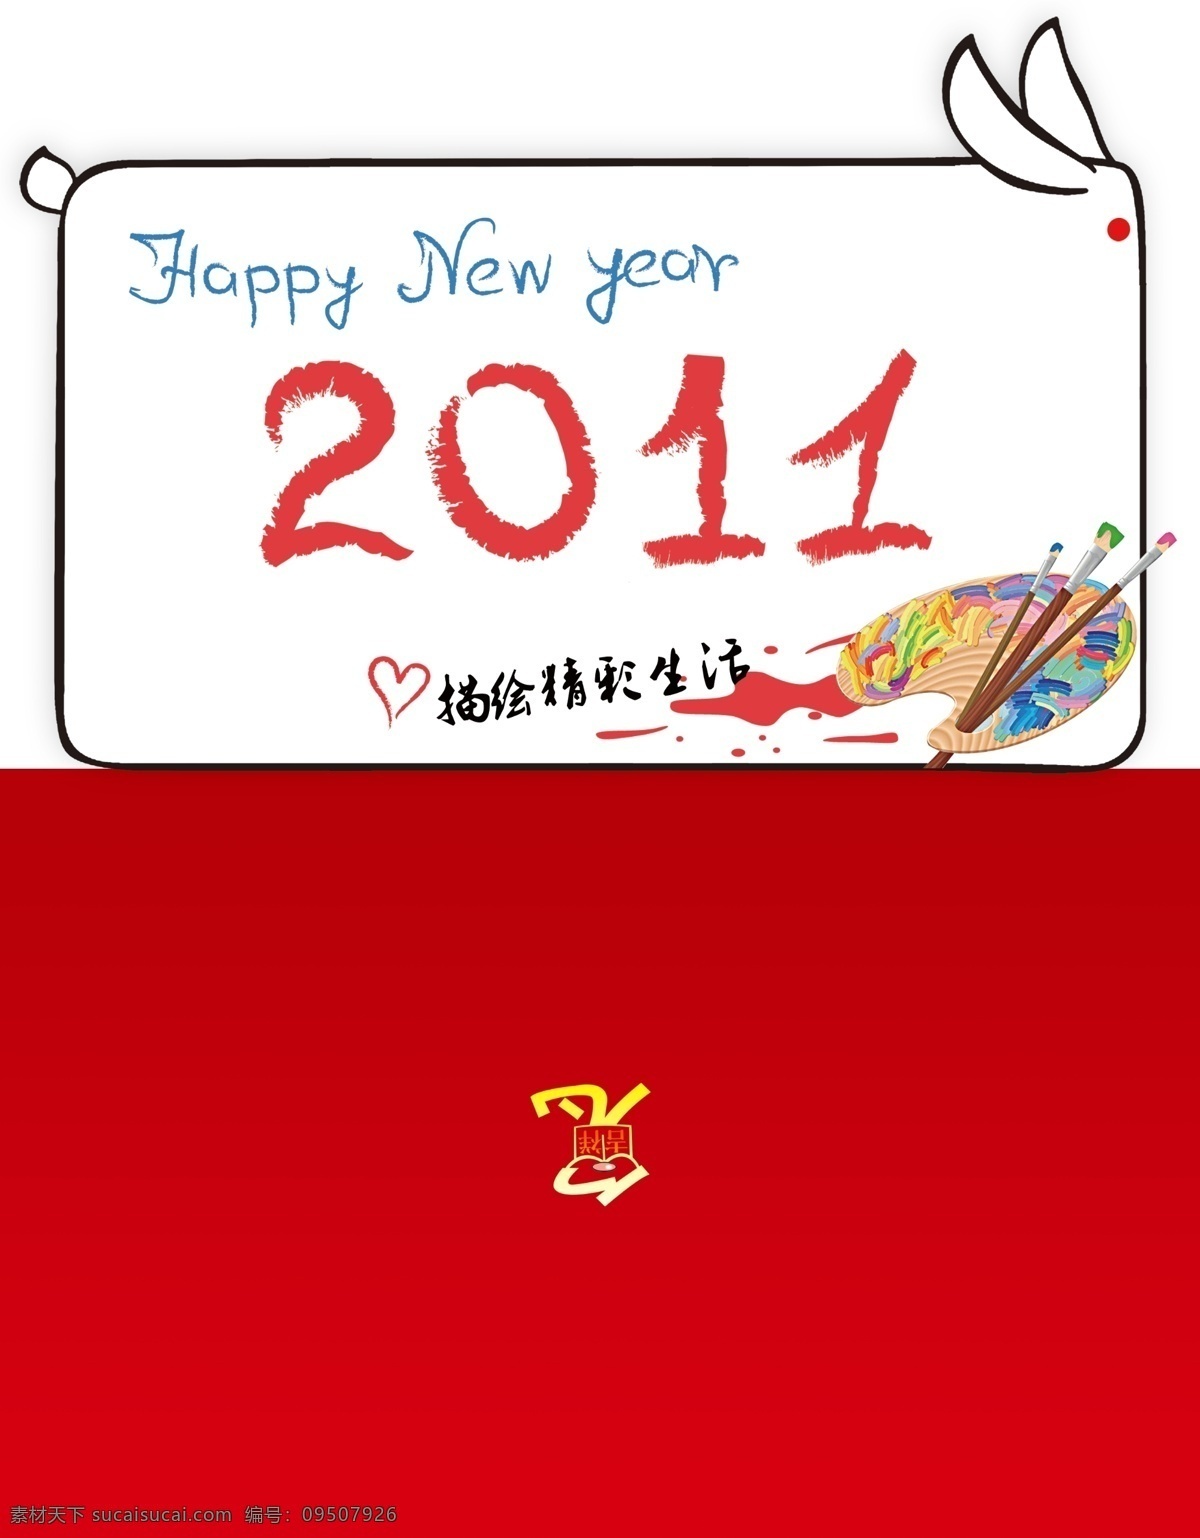 描绘 生活 新年贺卡 贺卡 外页 新年 祝福 油画笔 贺卡信封 分层 源文件